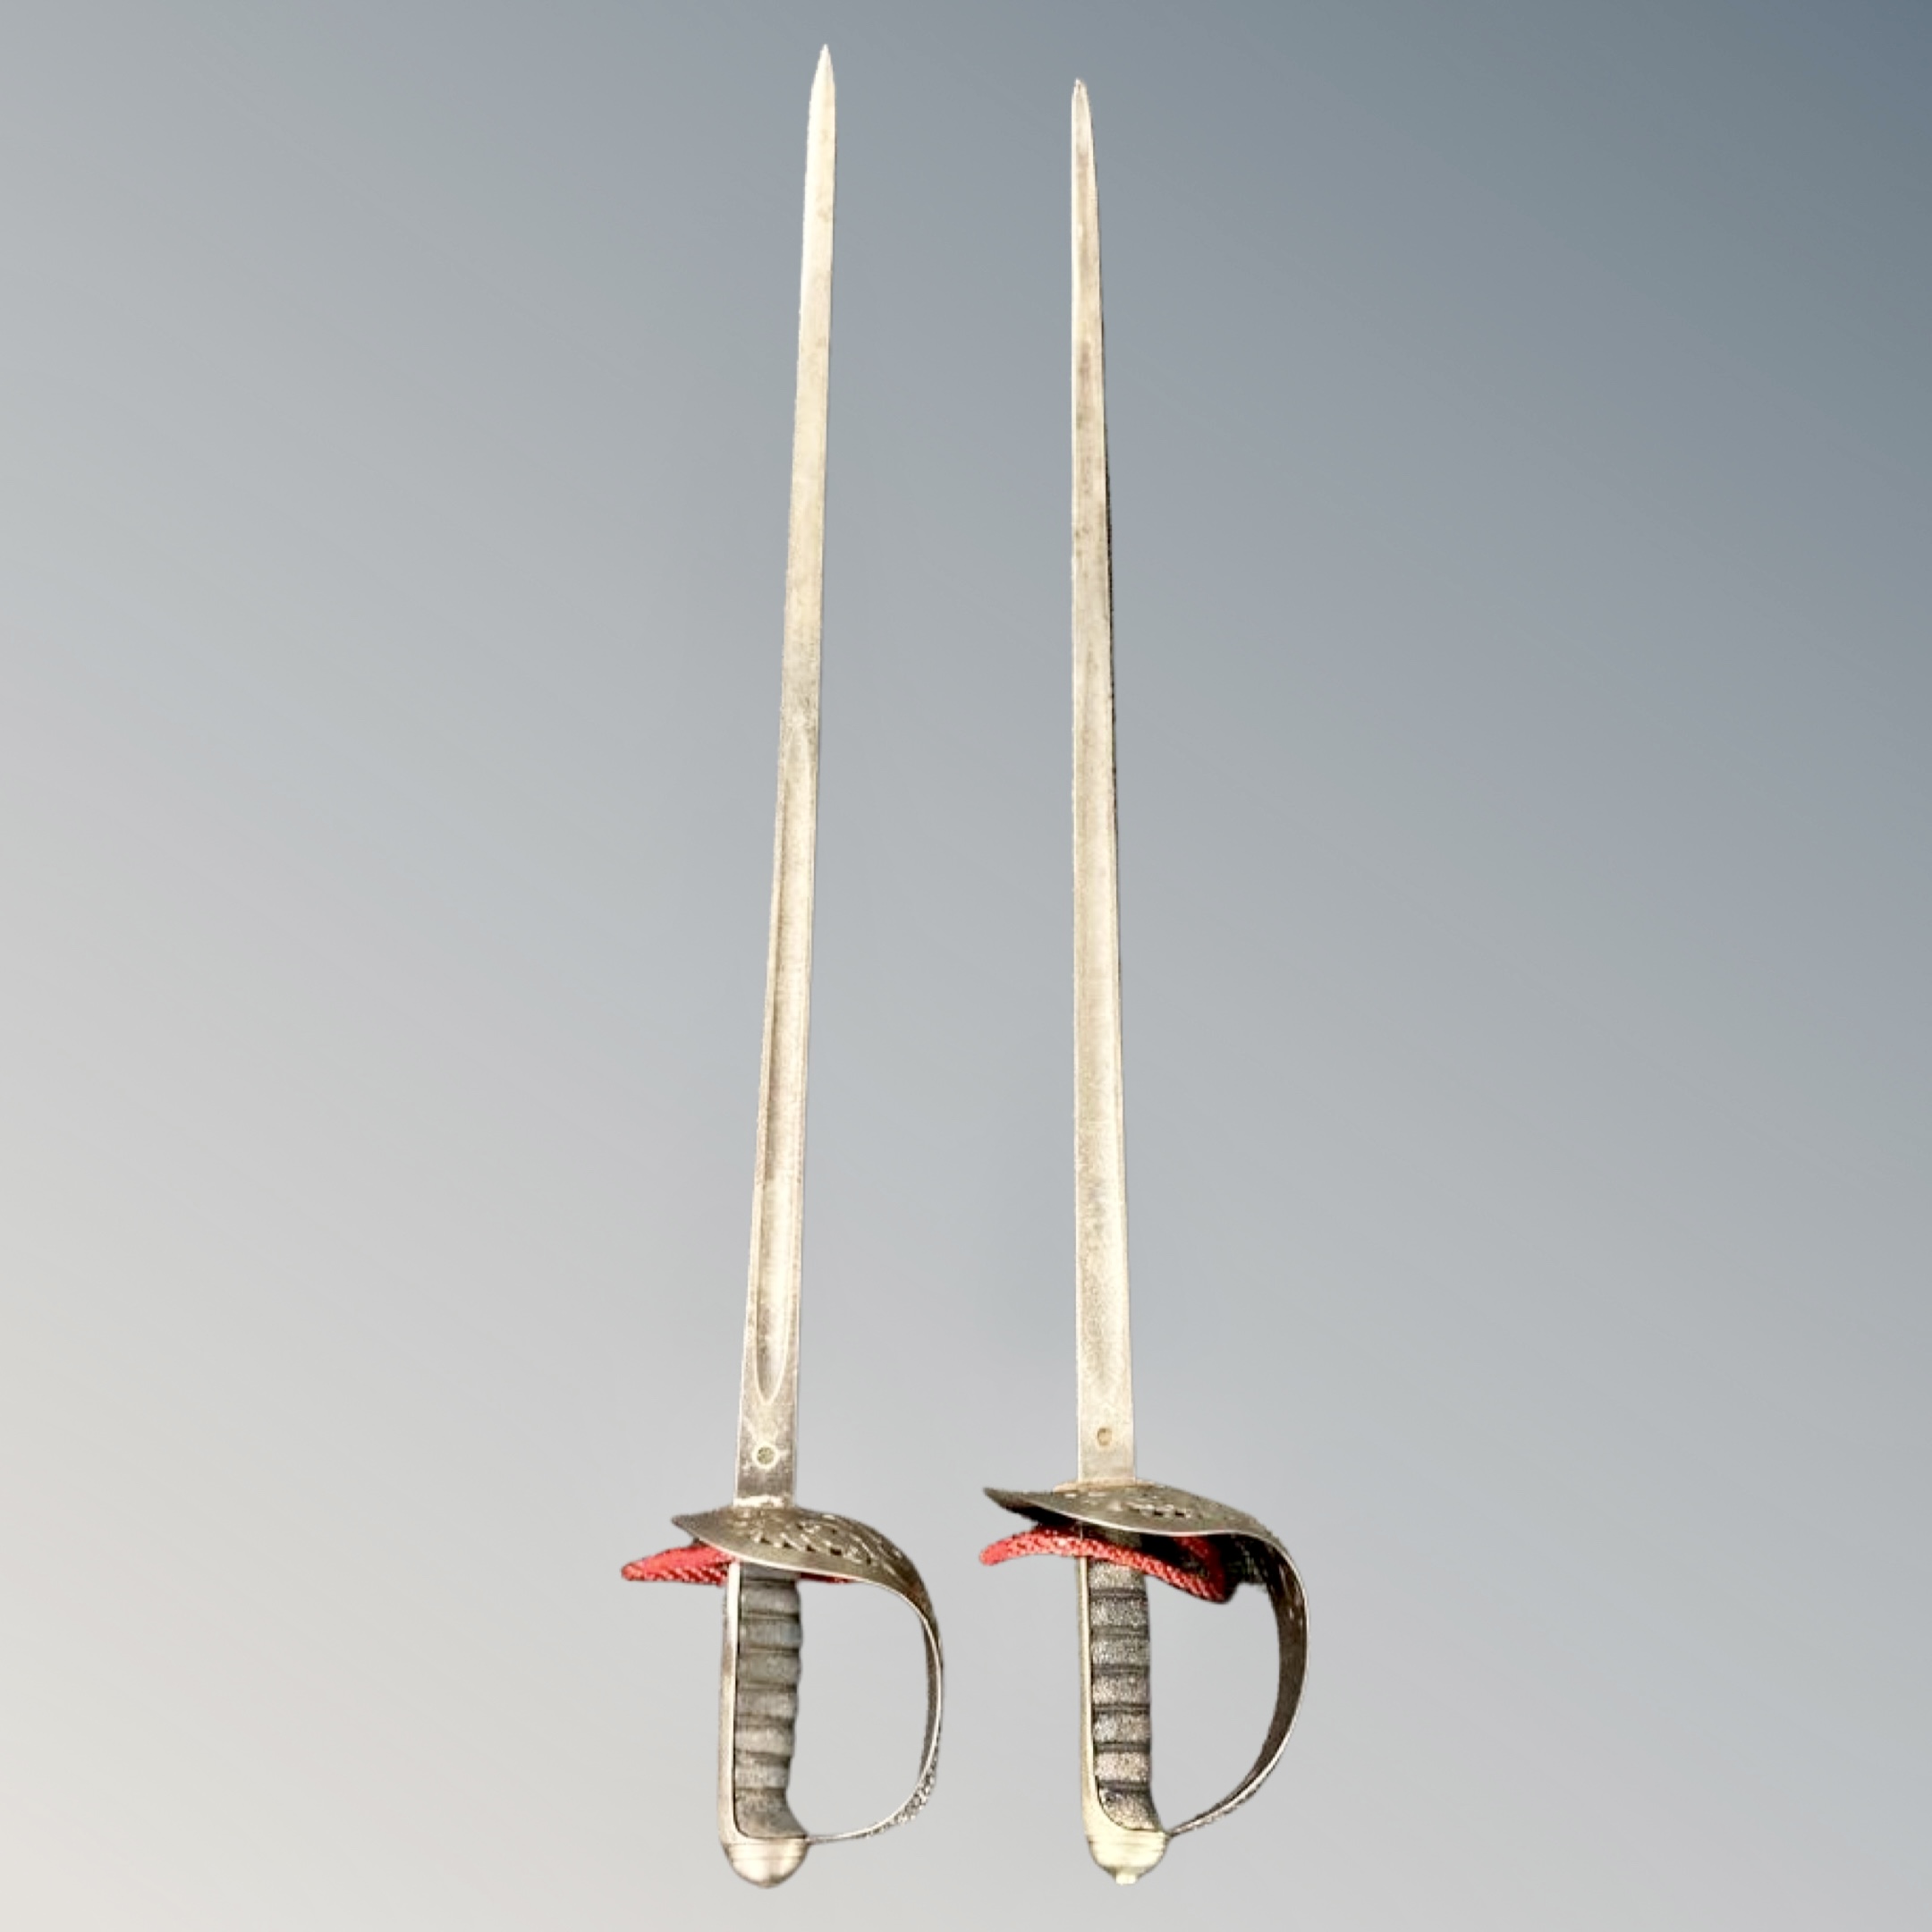 Two George V 1897 pattern infantry officer's swords (2)